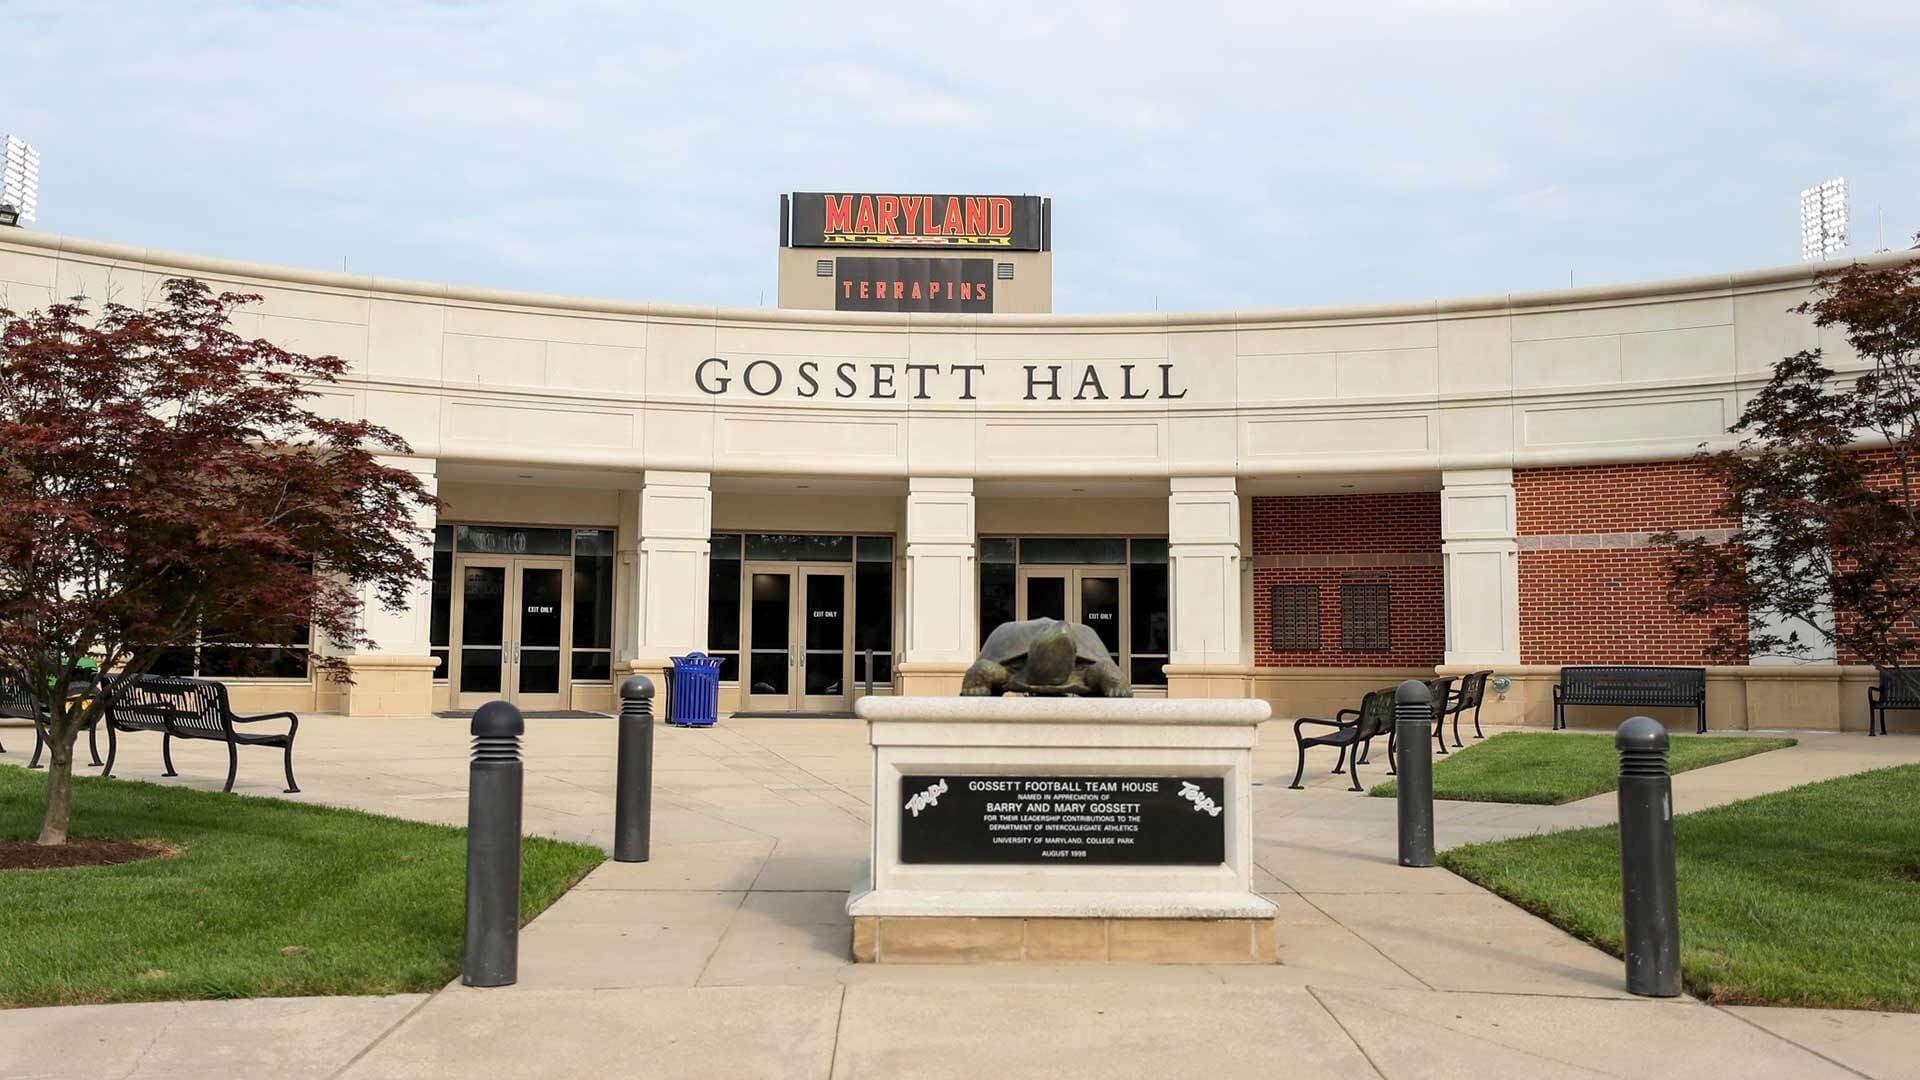 Gossett Hall